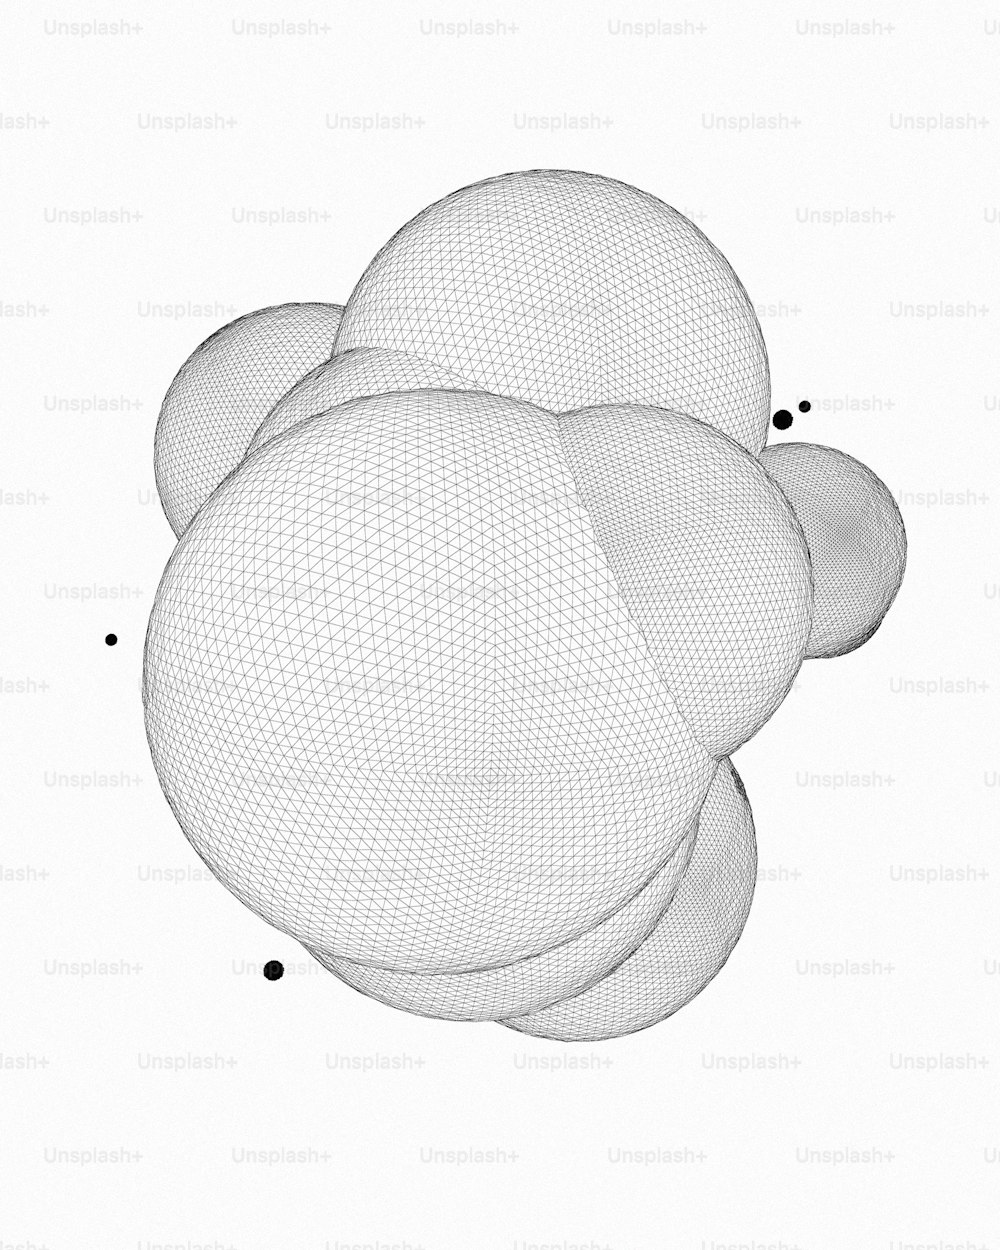 Una imagen generada por computadora de tres esferas